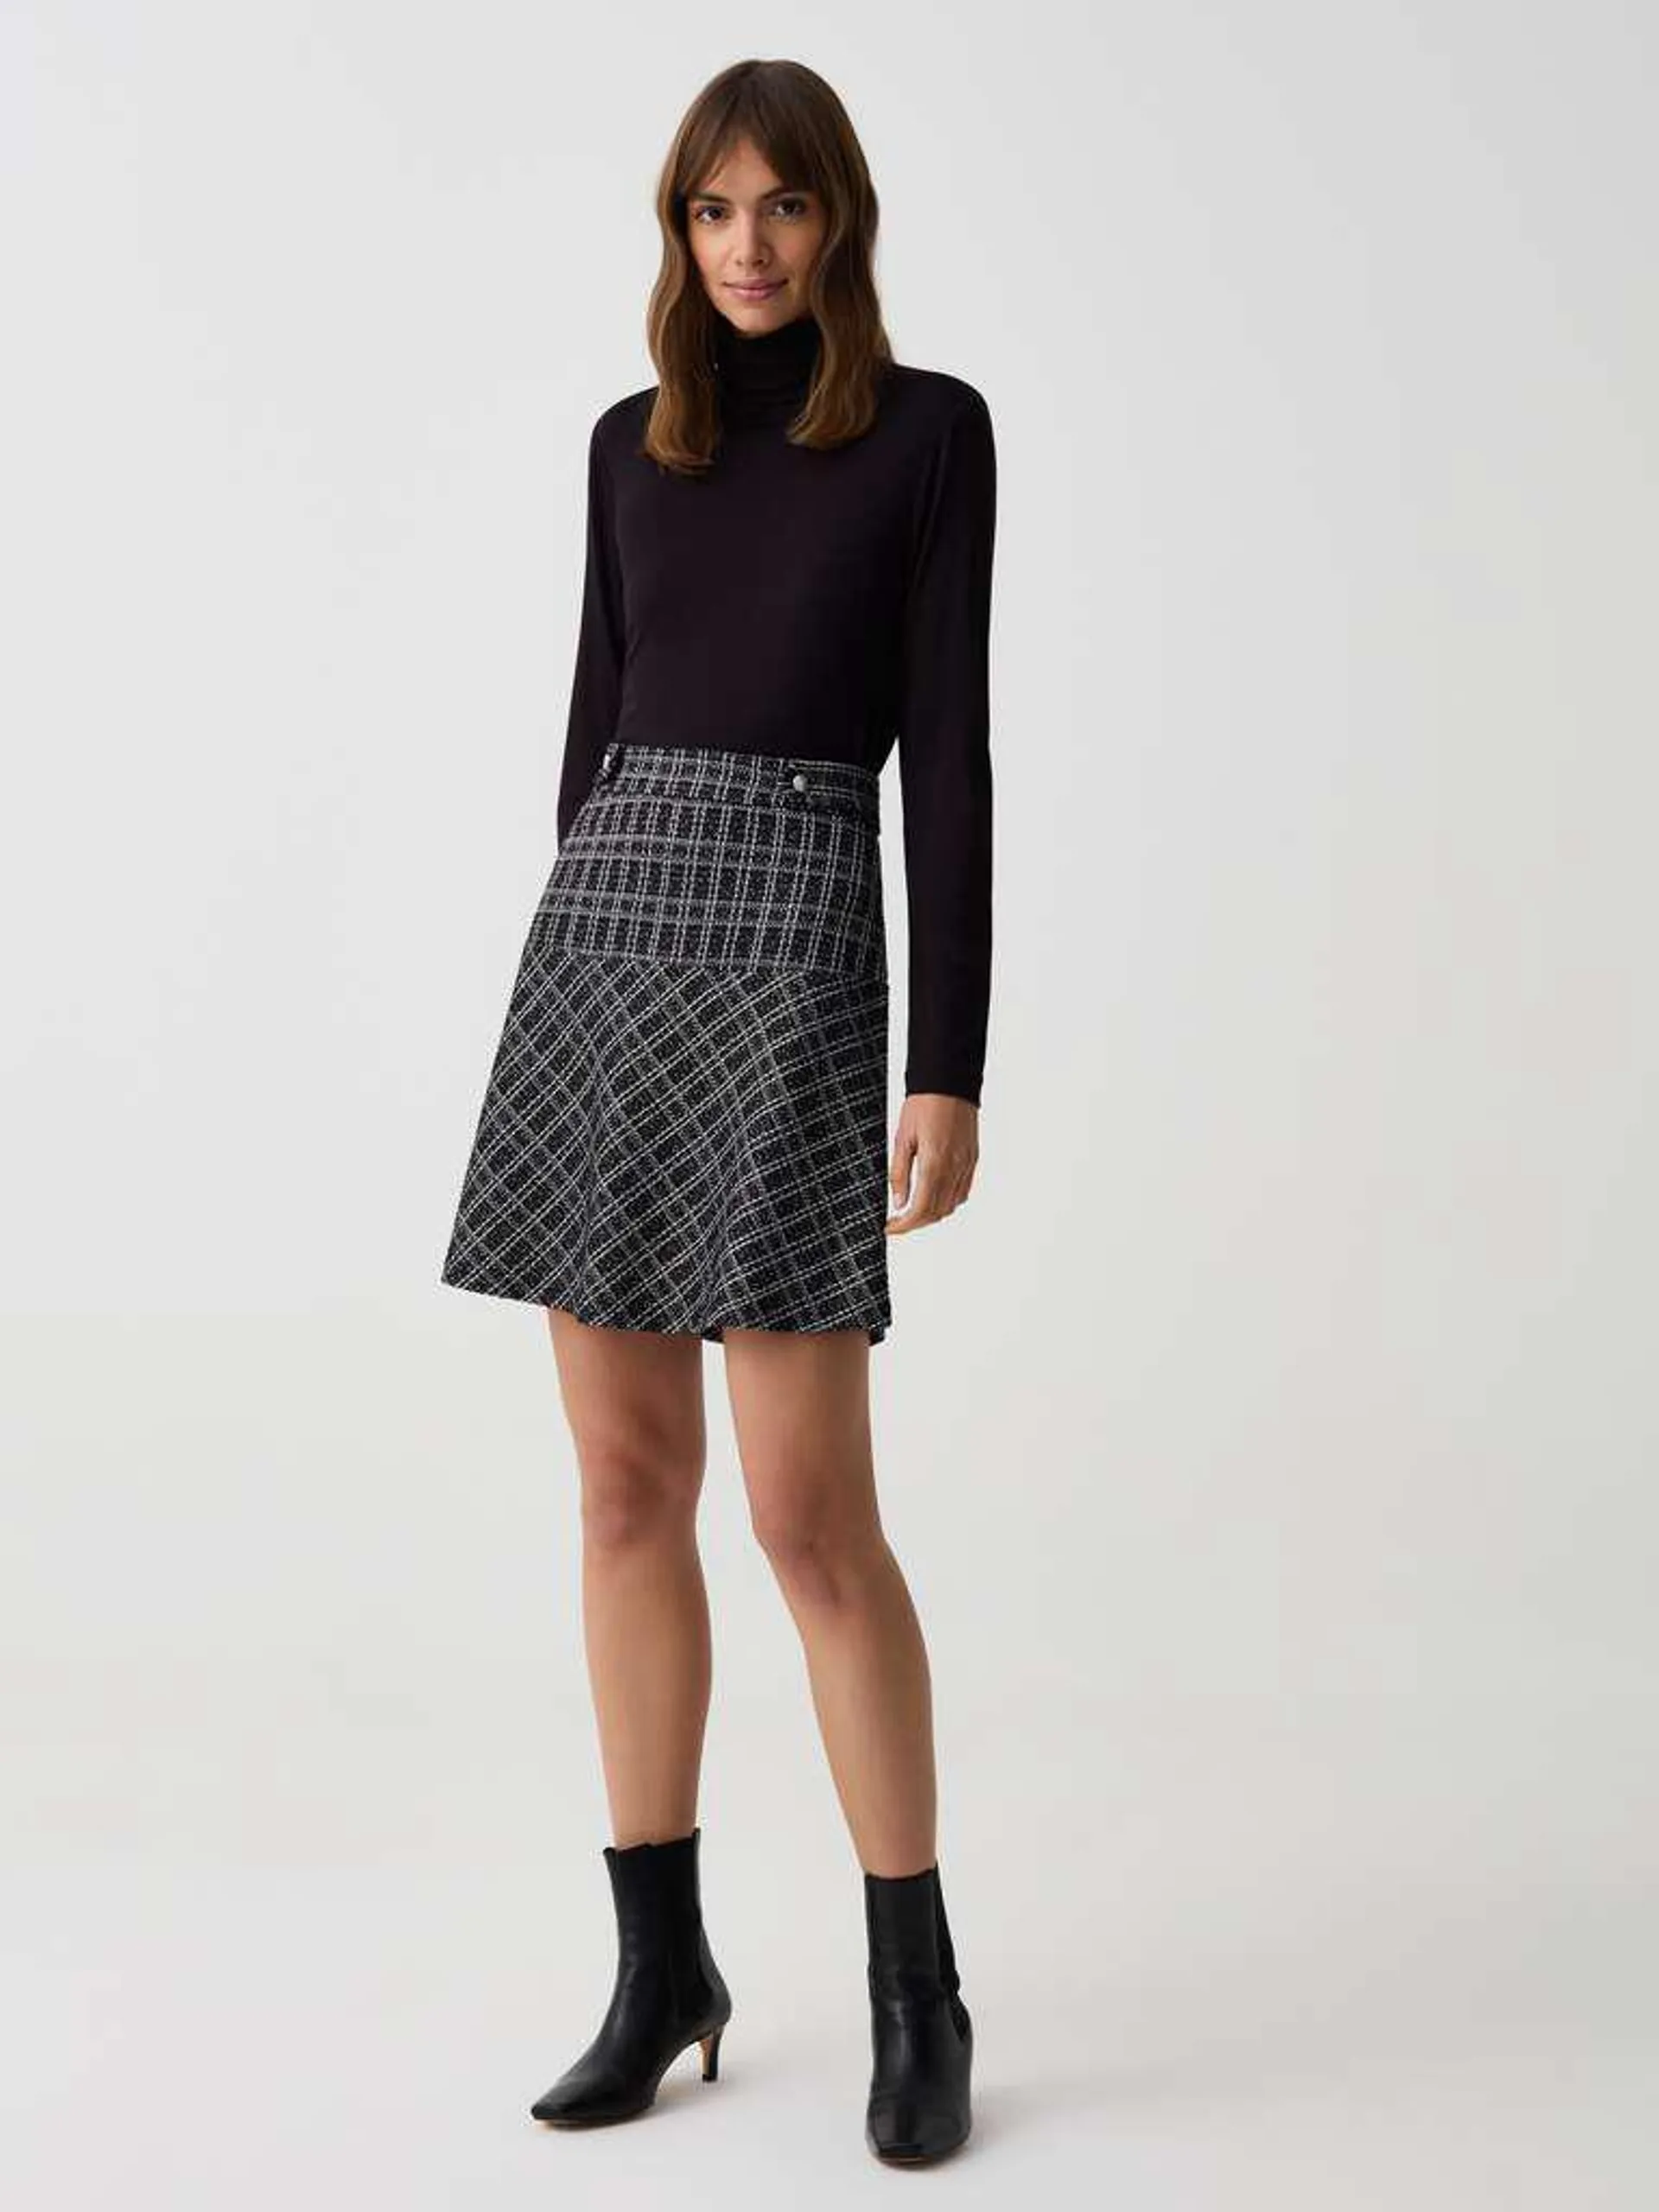 White/Black Short full skirt in patterned lurex